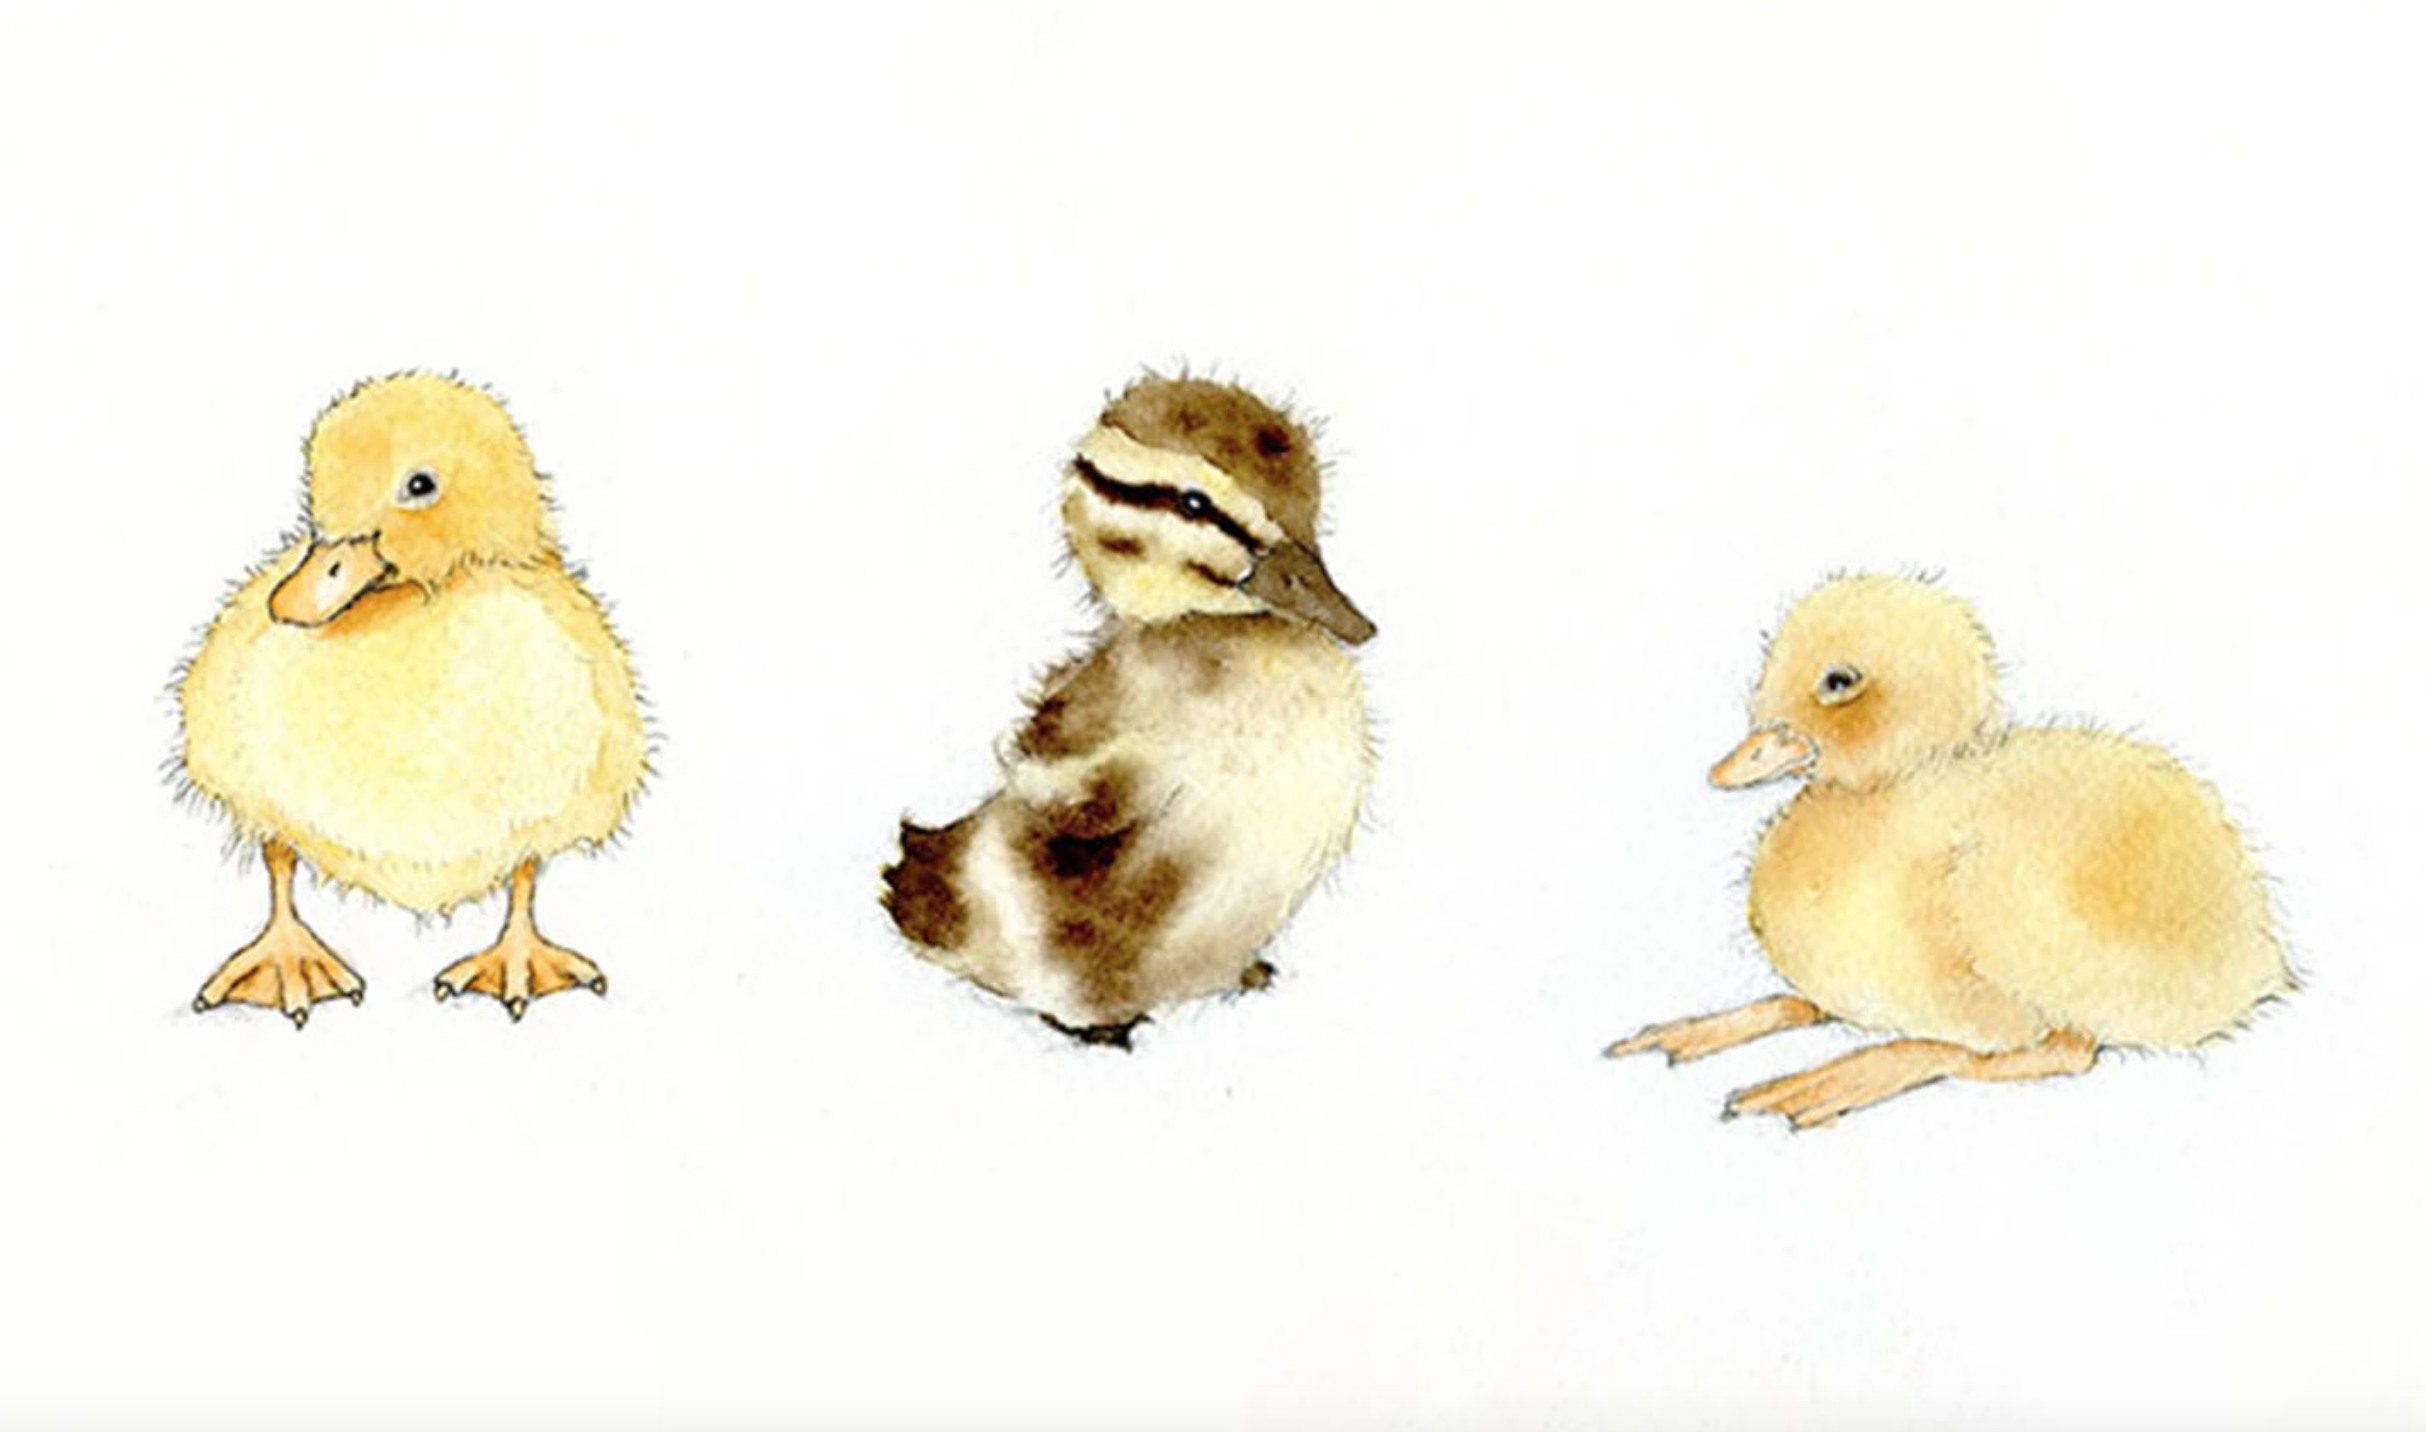 painted ducklings